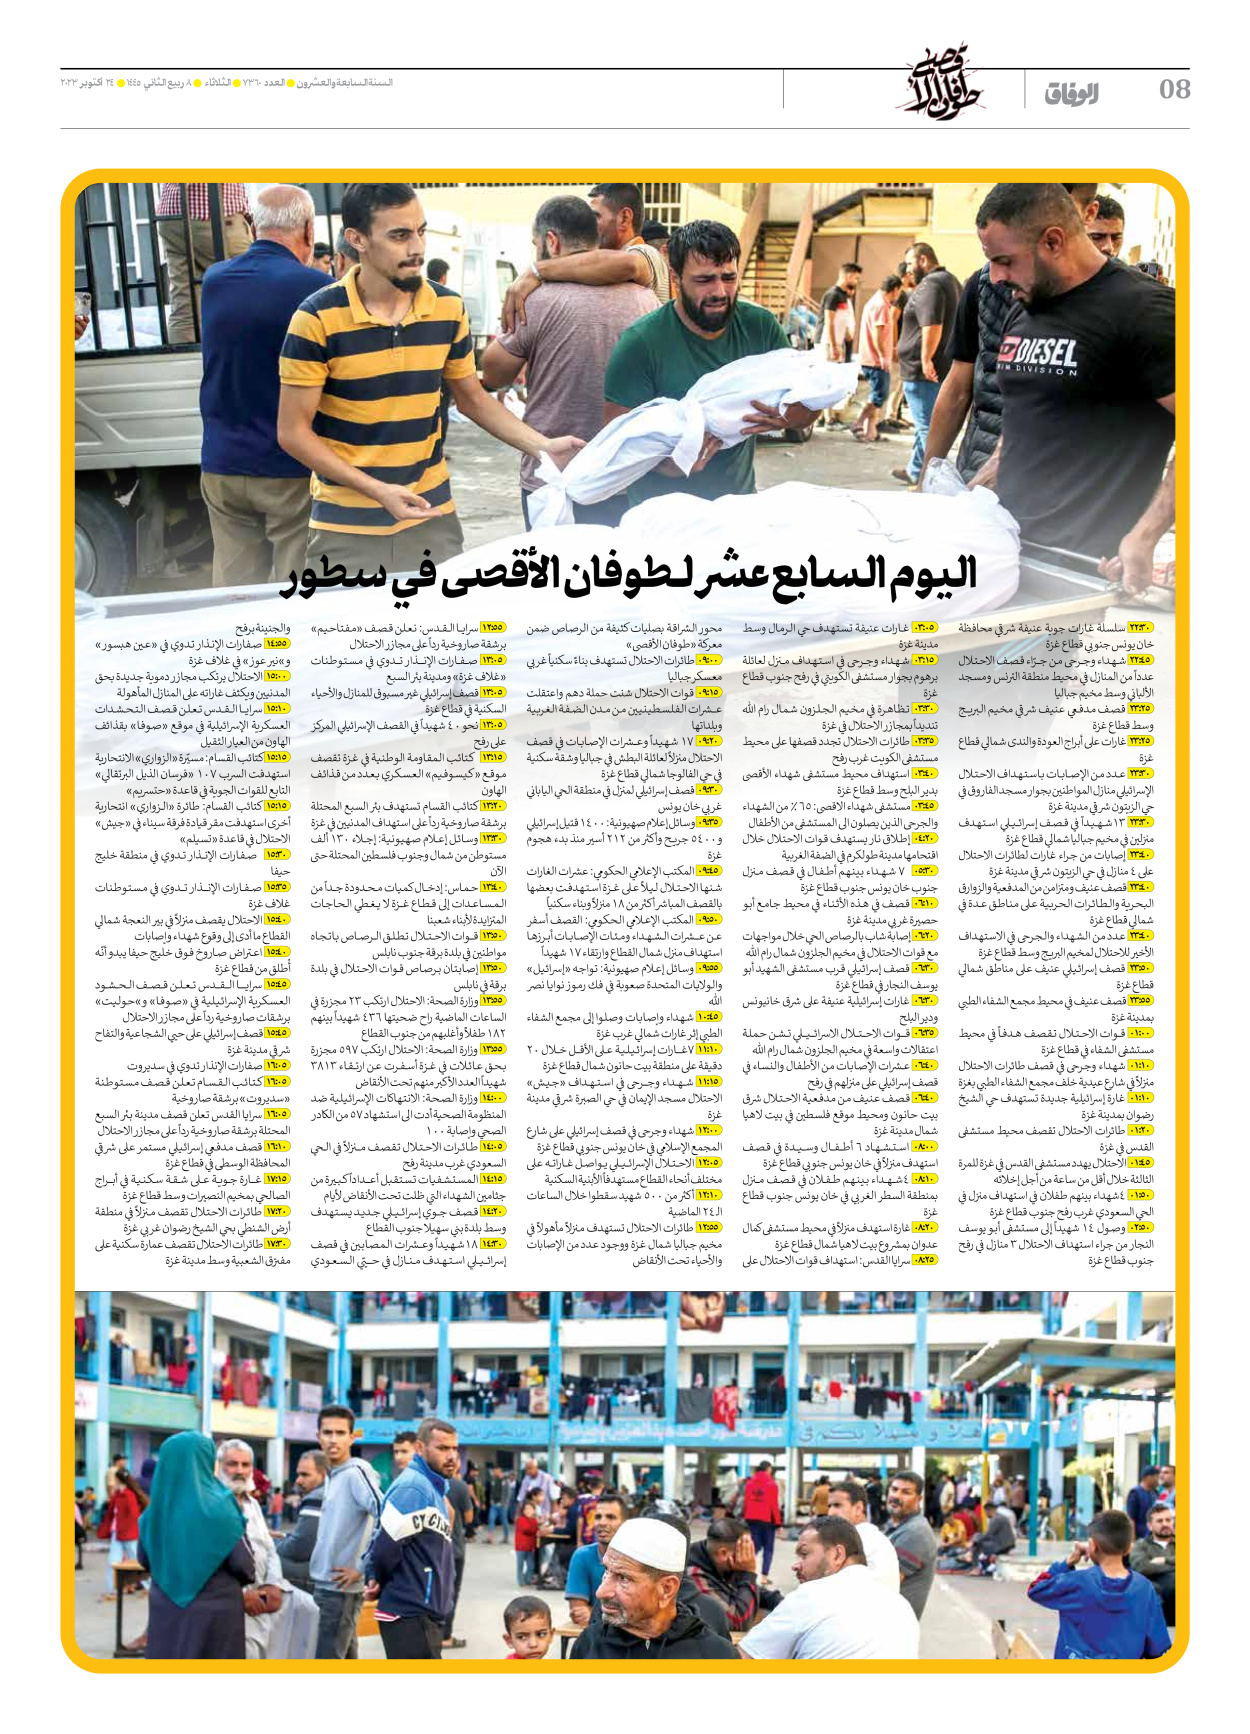 صحیفة ایران الدولیة الوفاق - العدد سبعة آلاف وثلاثمائة وستون - ٢٤ أكتوبر ٢٠٢٣ - الصفحة ۸